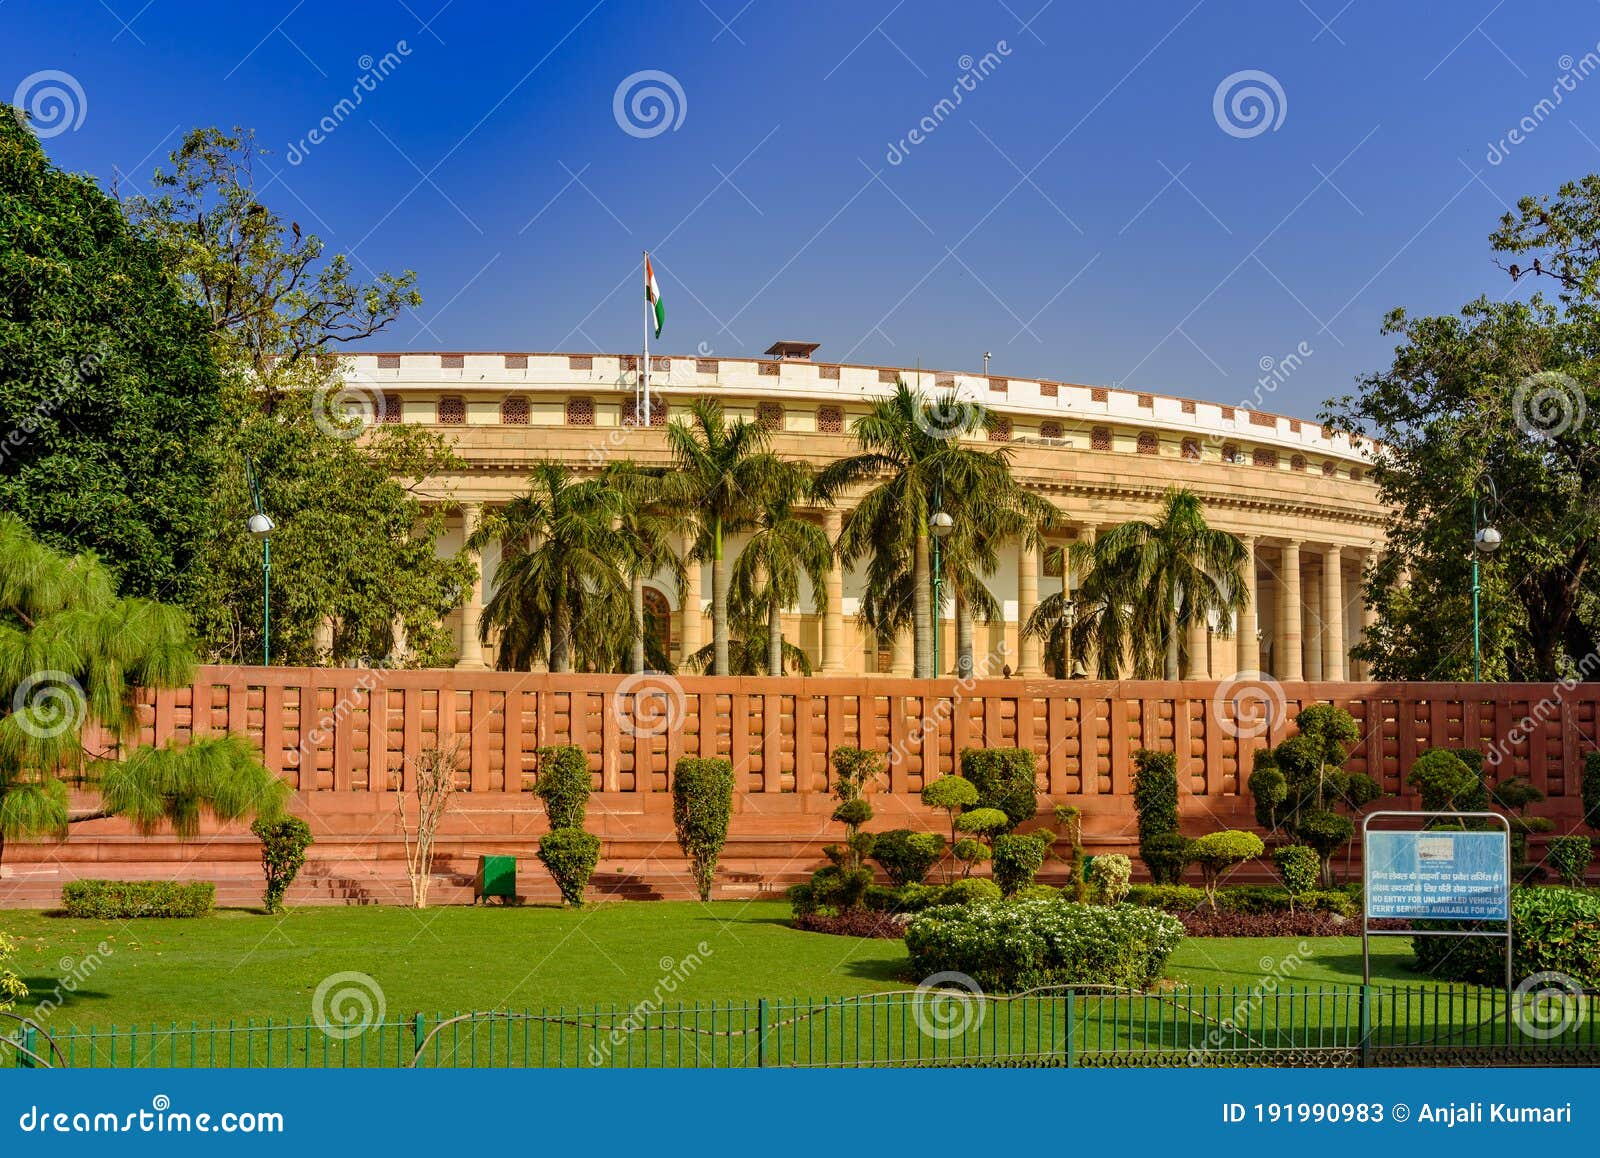 sansad bhavan or parliament of india